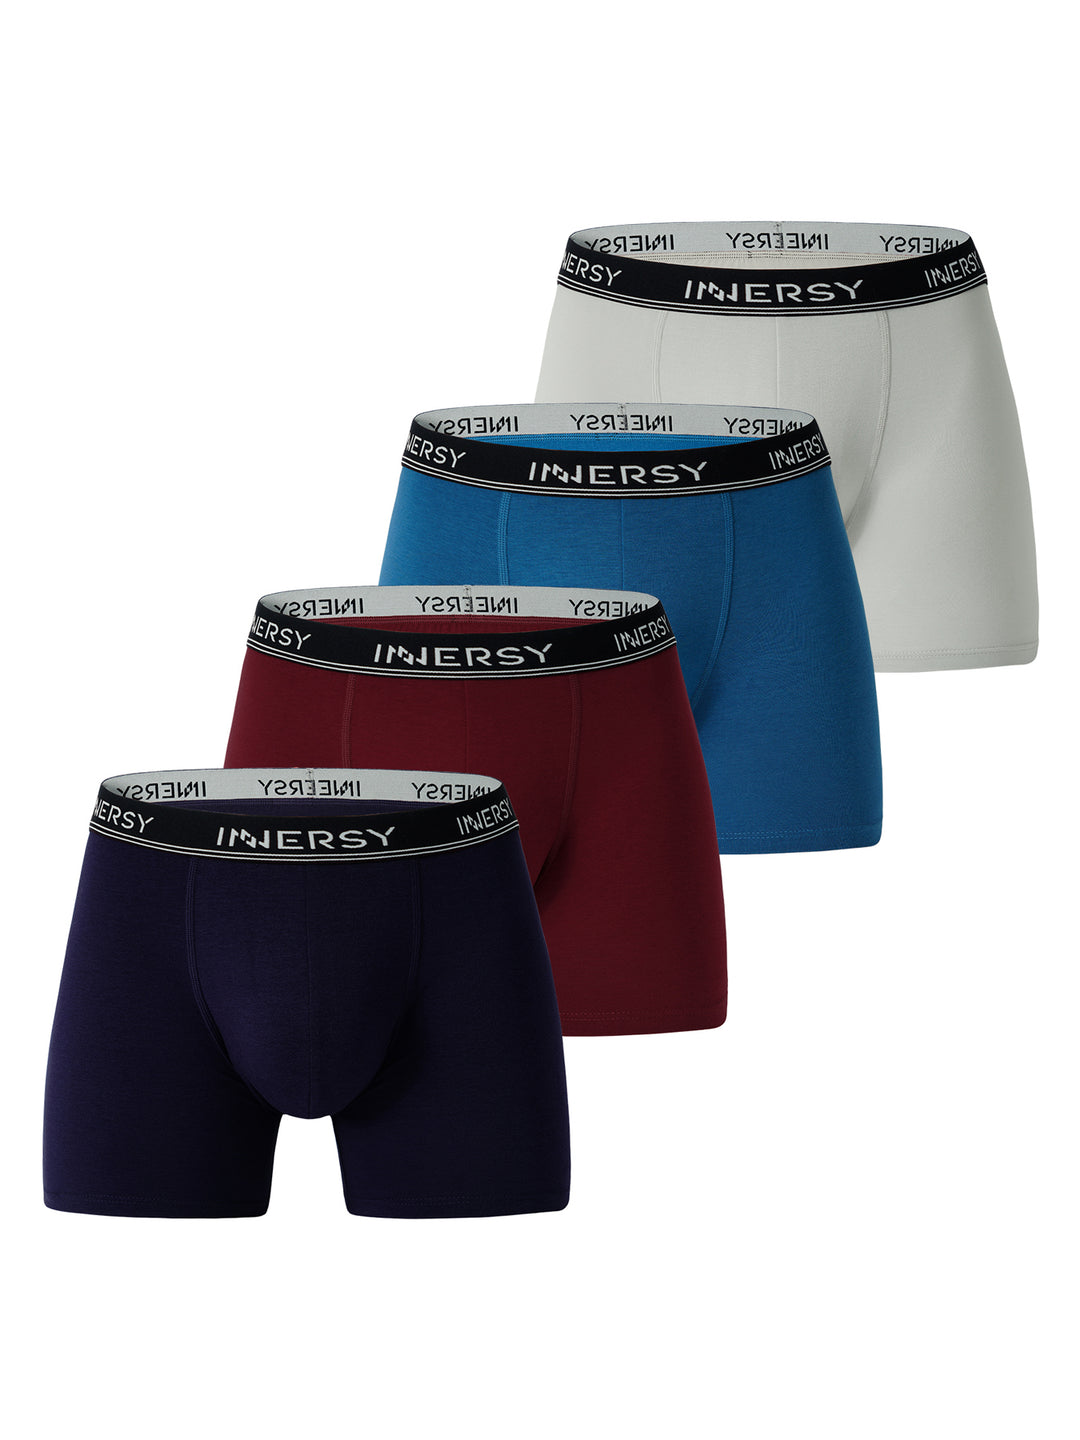 PUMLEY Mens Underwear Boxer Briefs 6Pack No Ride Up Soft Cotton